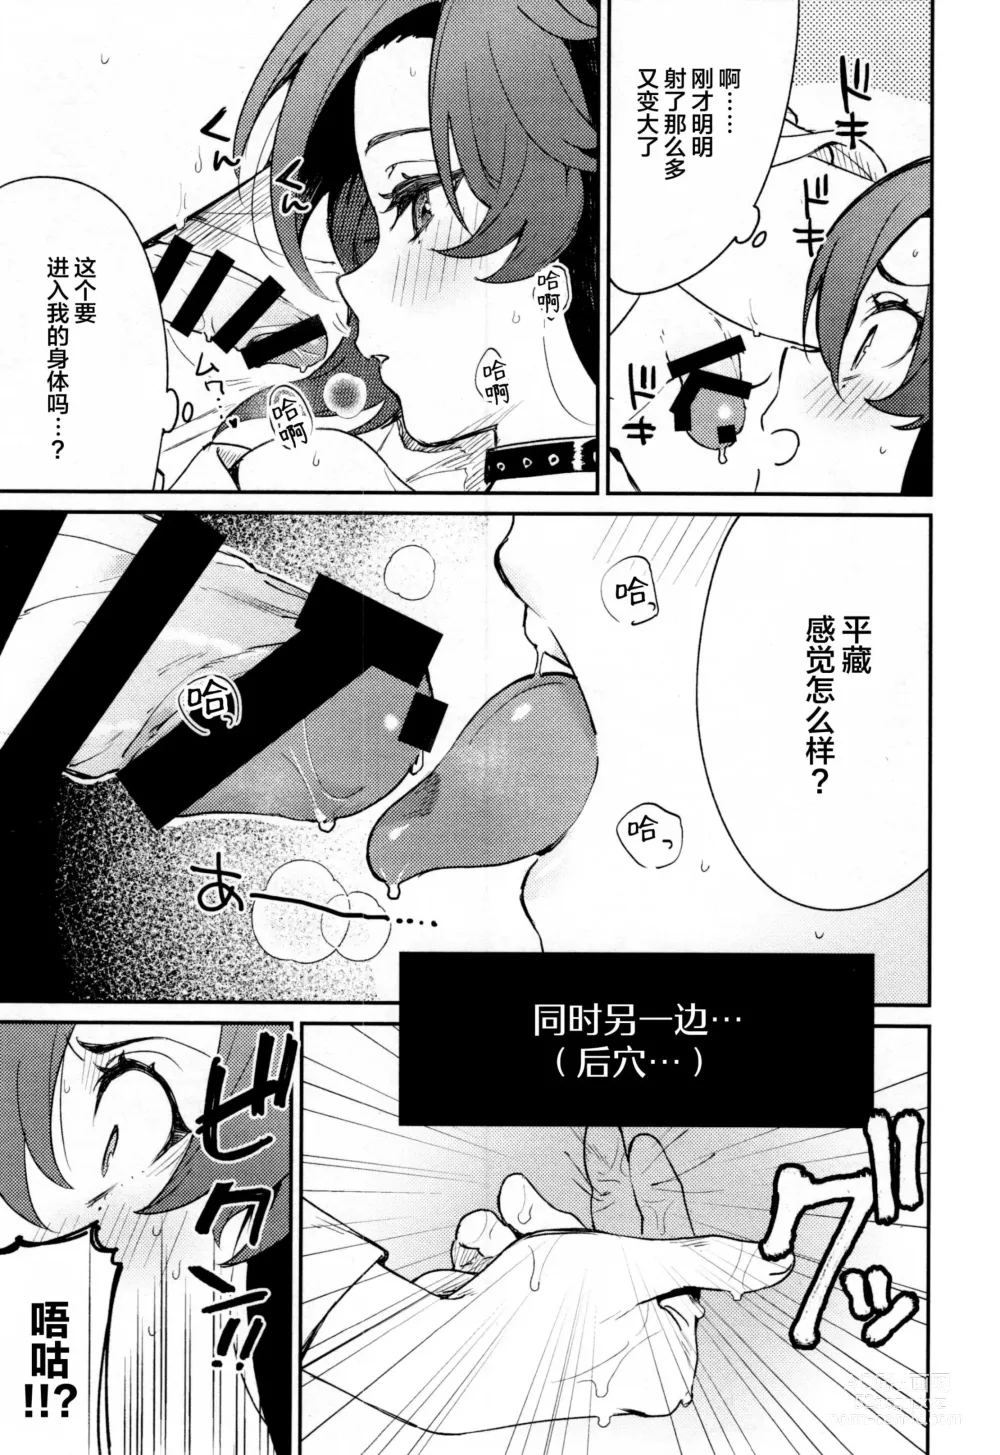 Page 36 of doujinshi Kaze Kyoumei Kando 2-bai